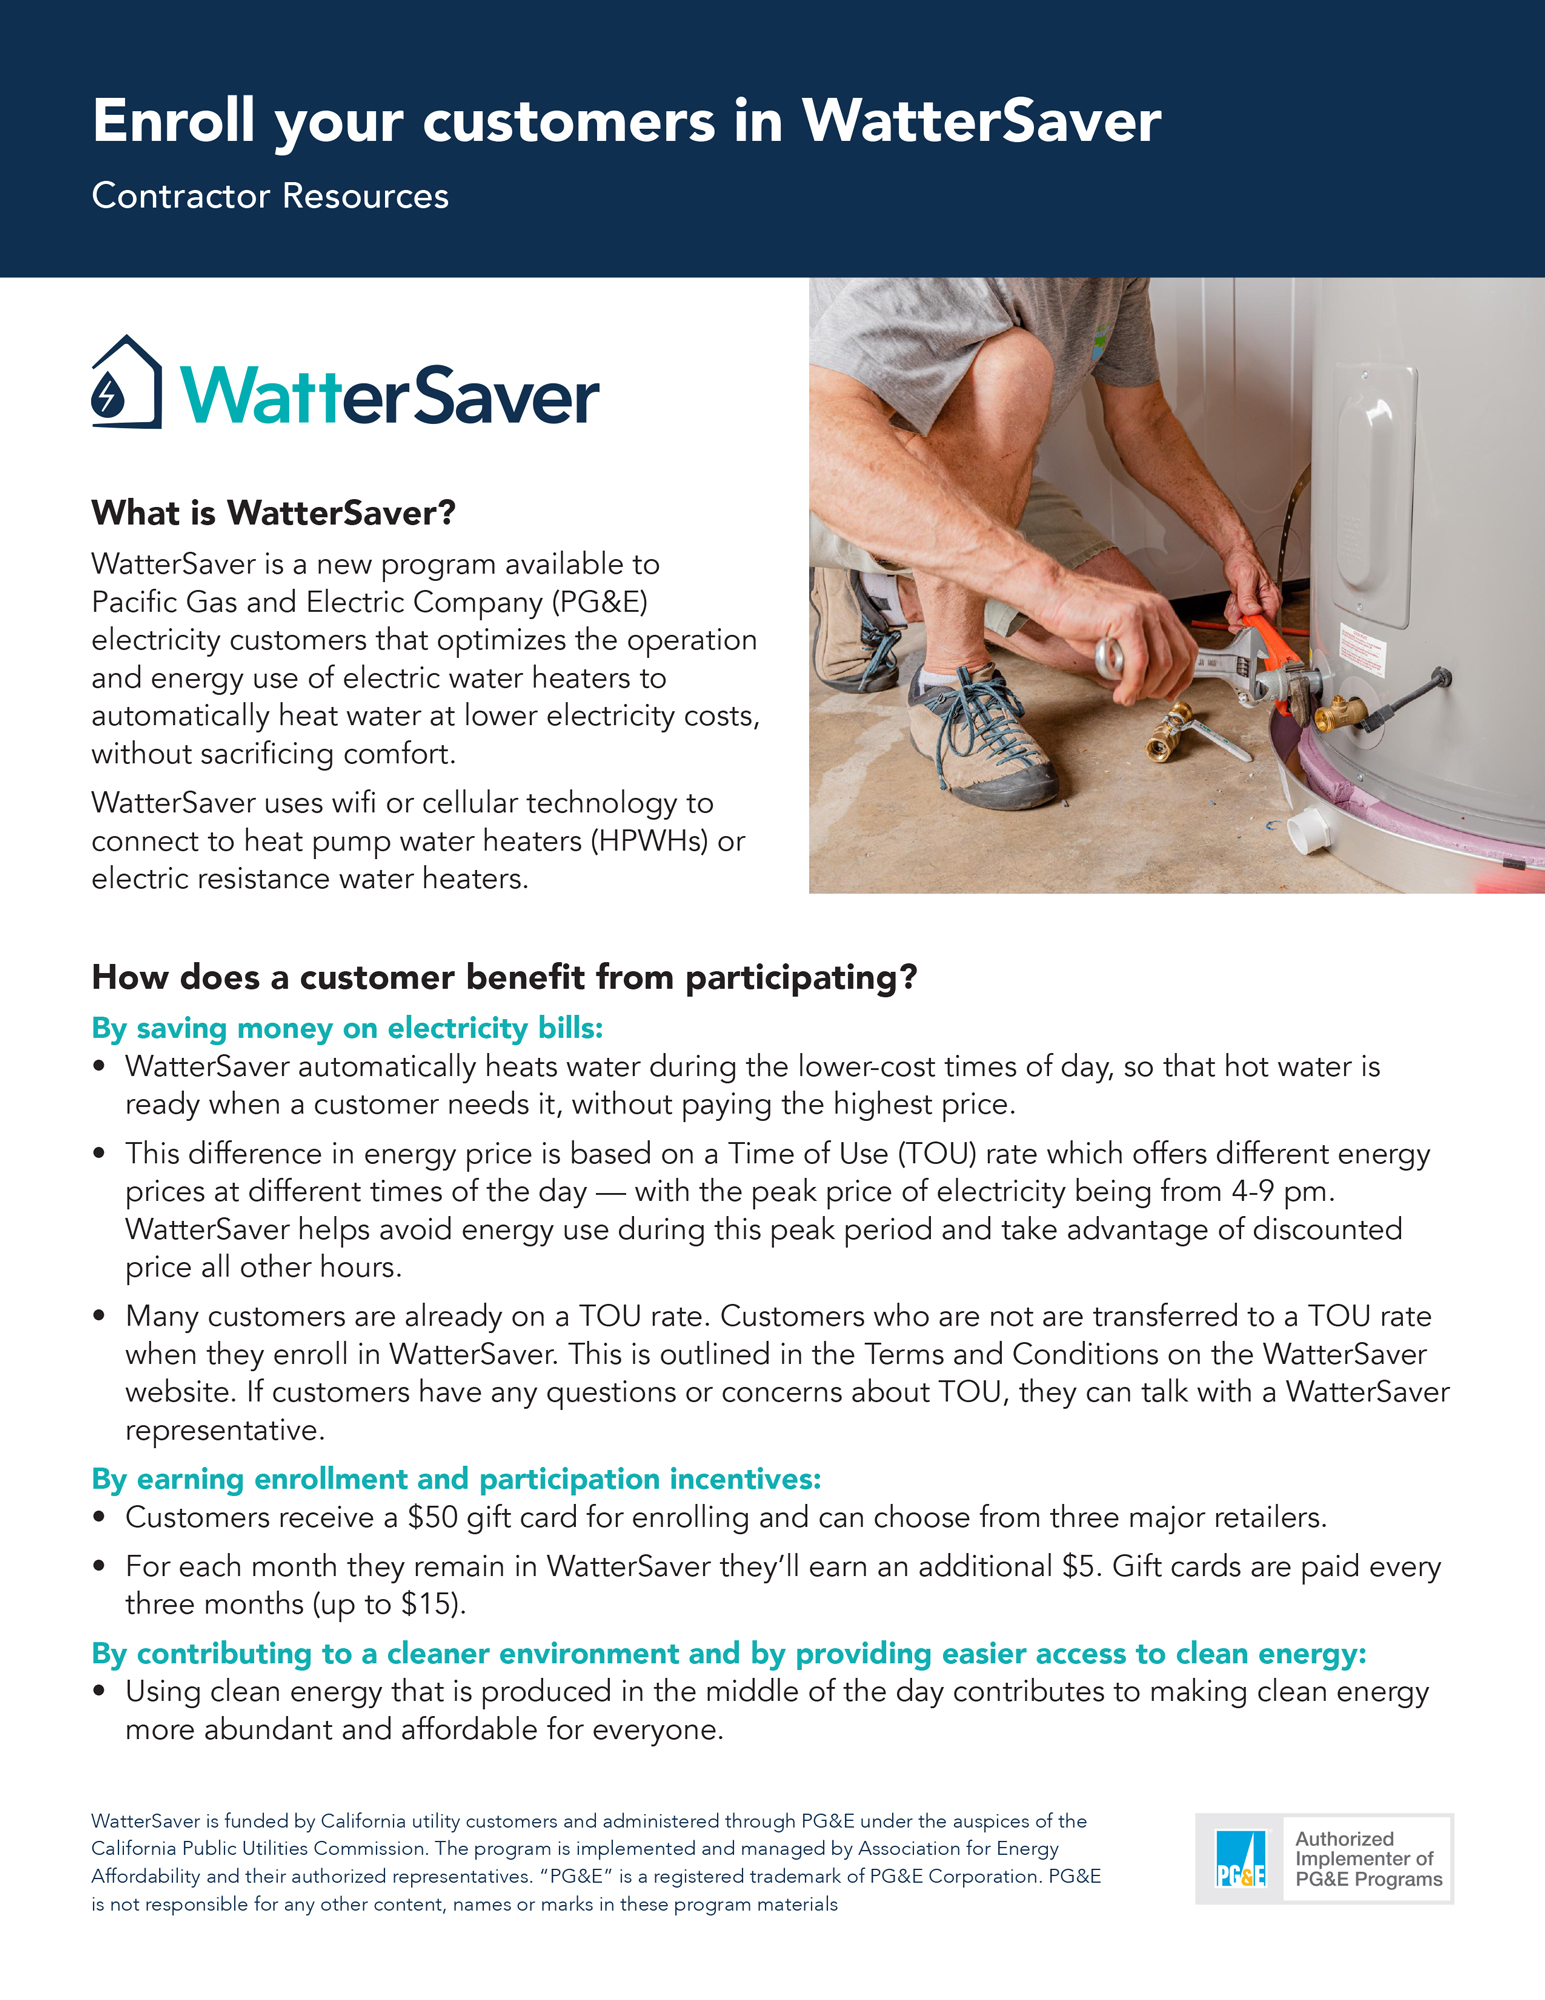 Recursos de contratistas para instalar calentadores de agua con WatterSaver.